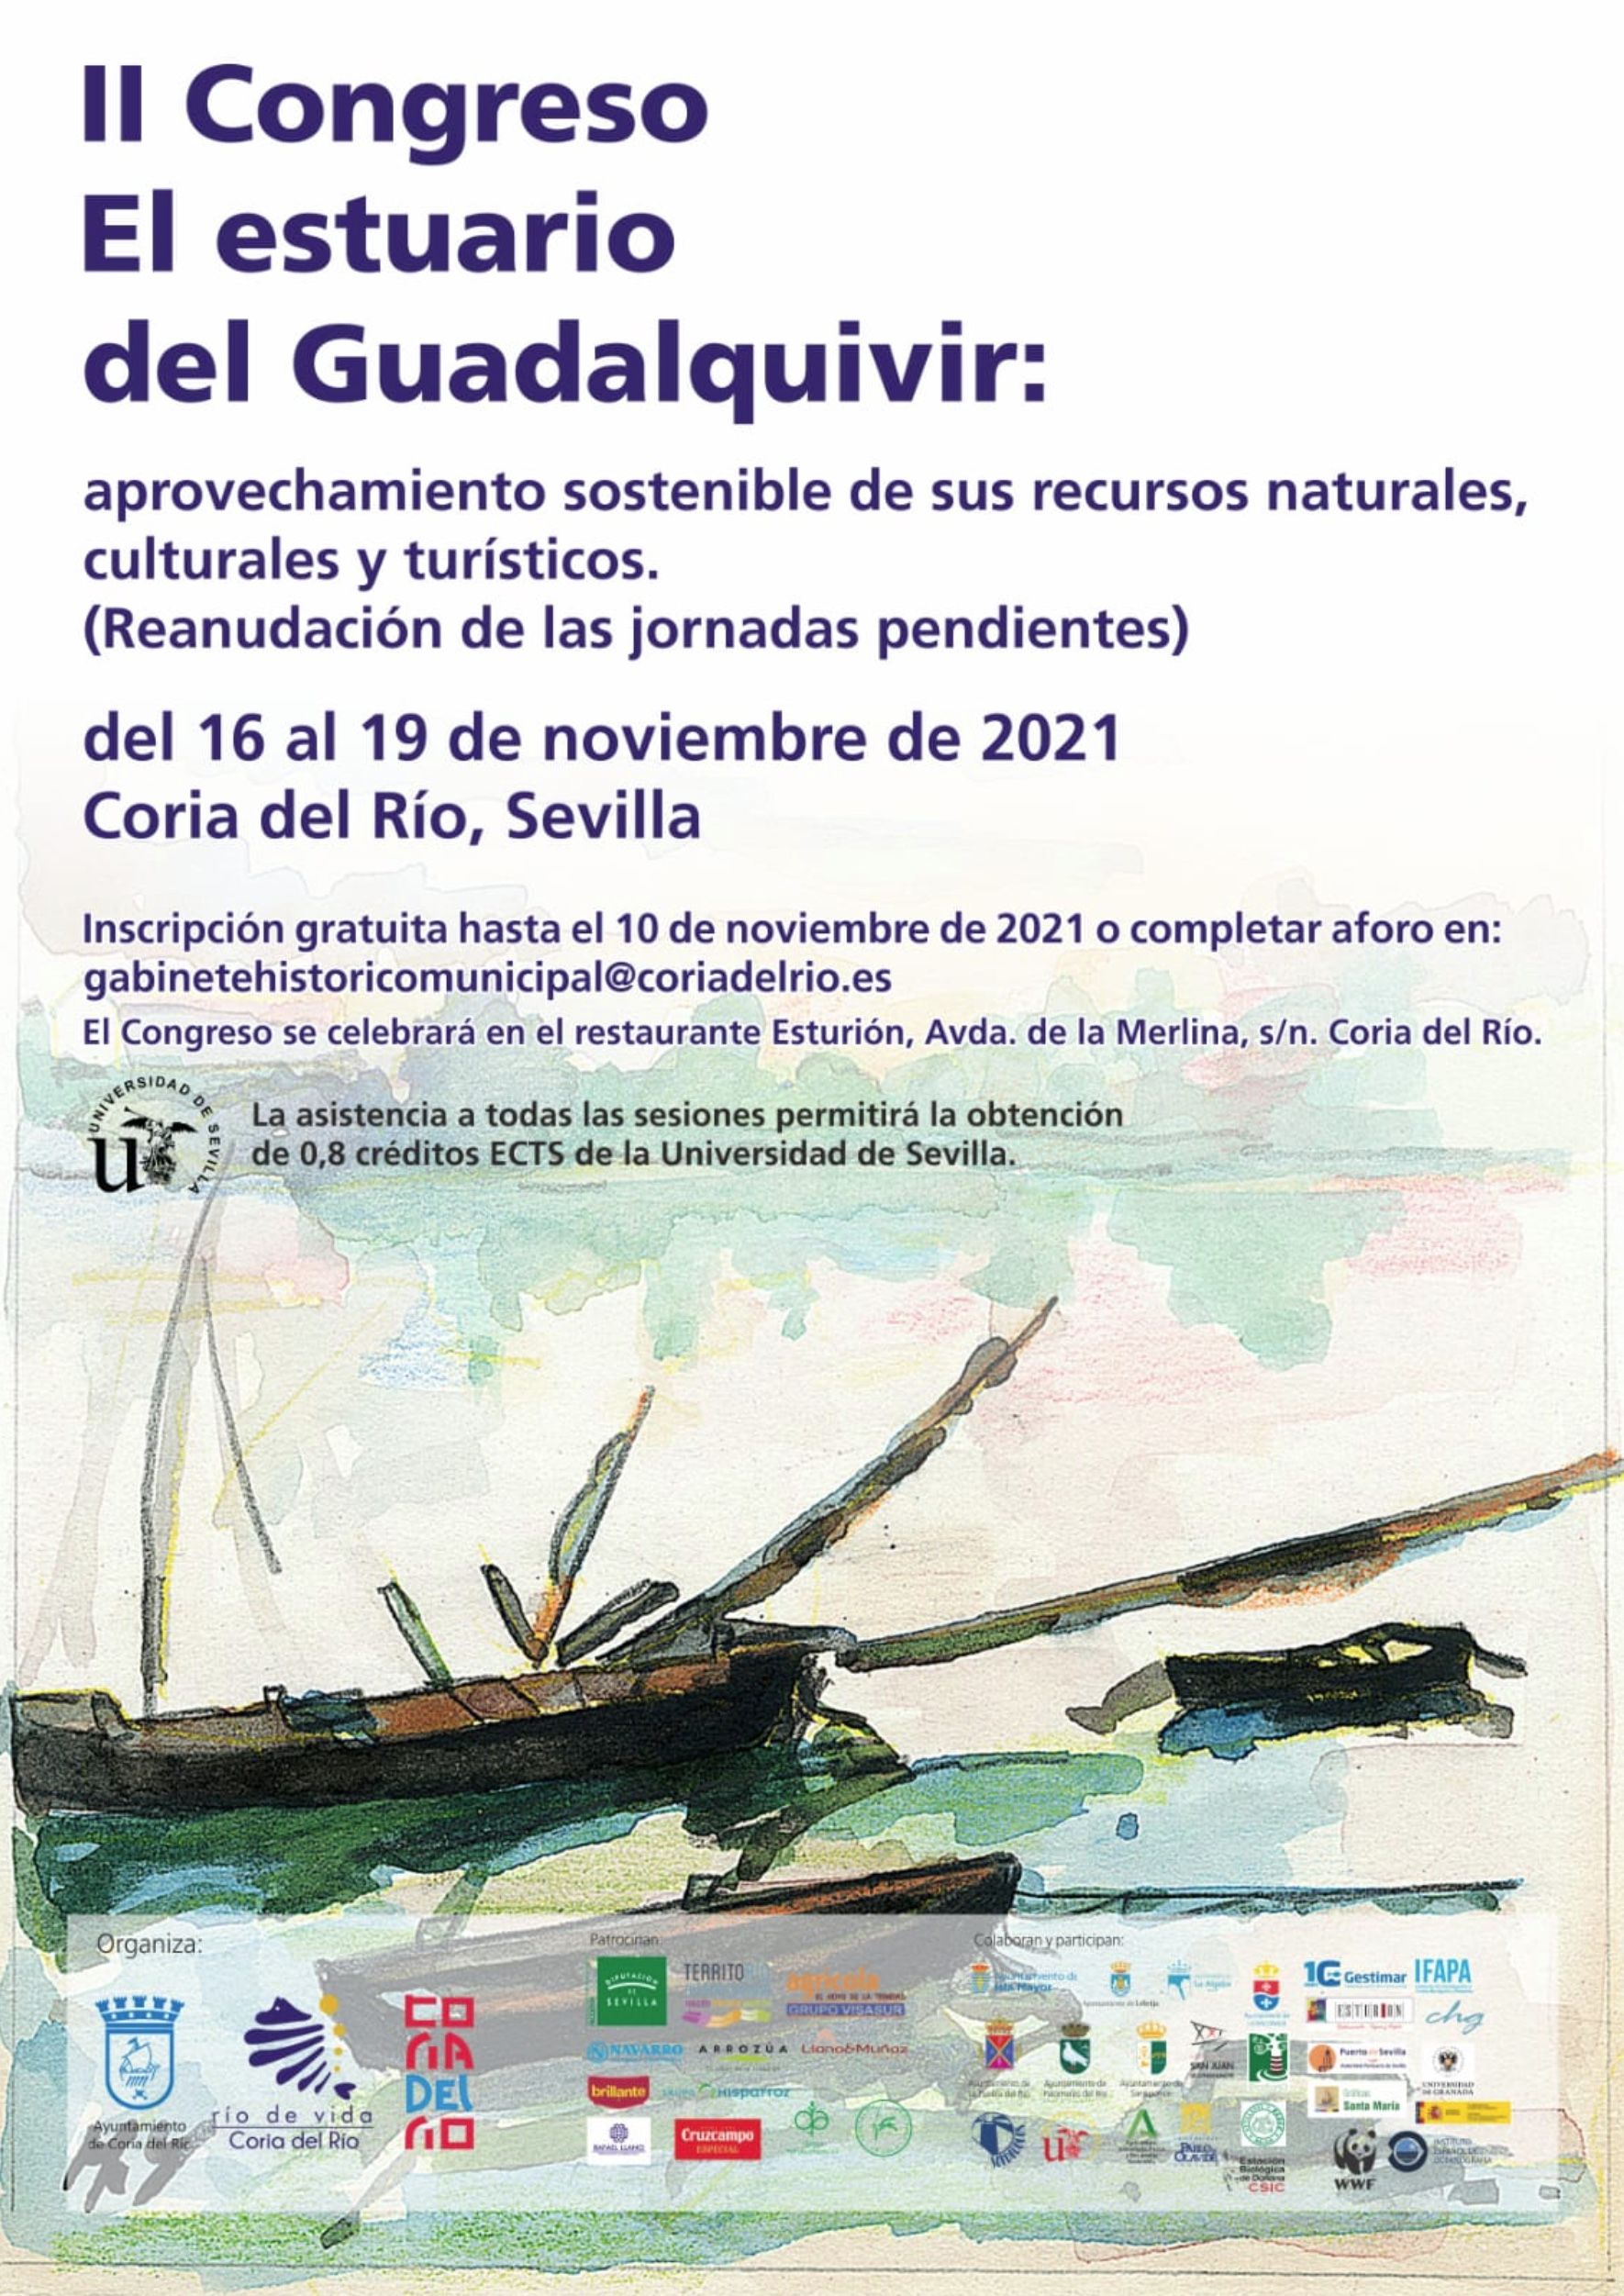 II Congreso. El estuario del Guadalquivir